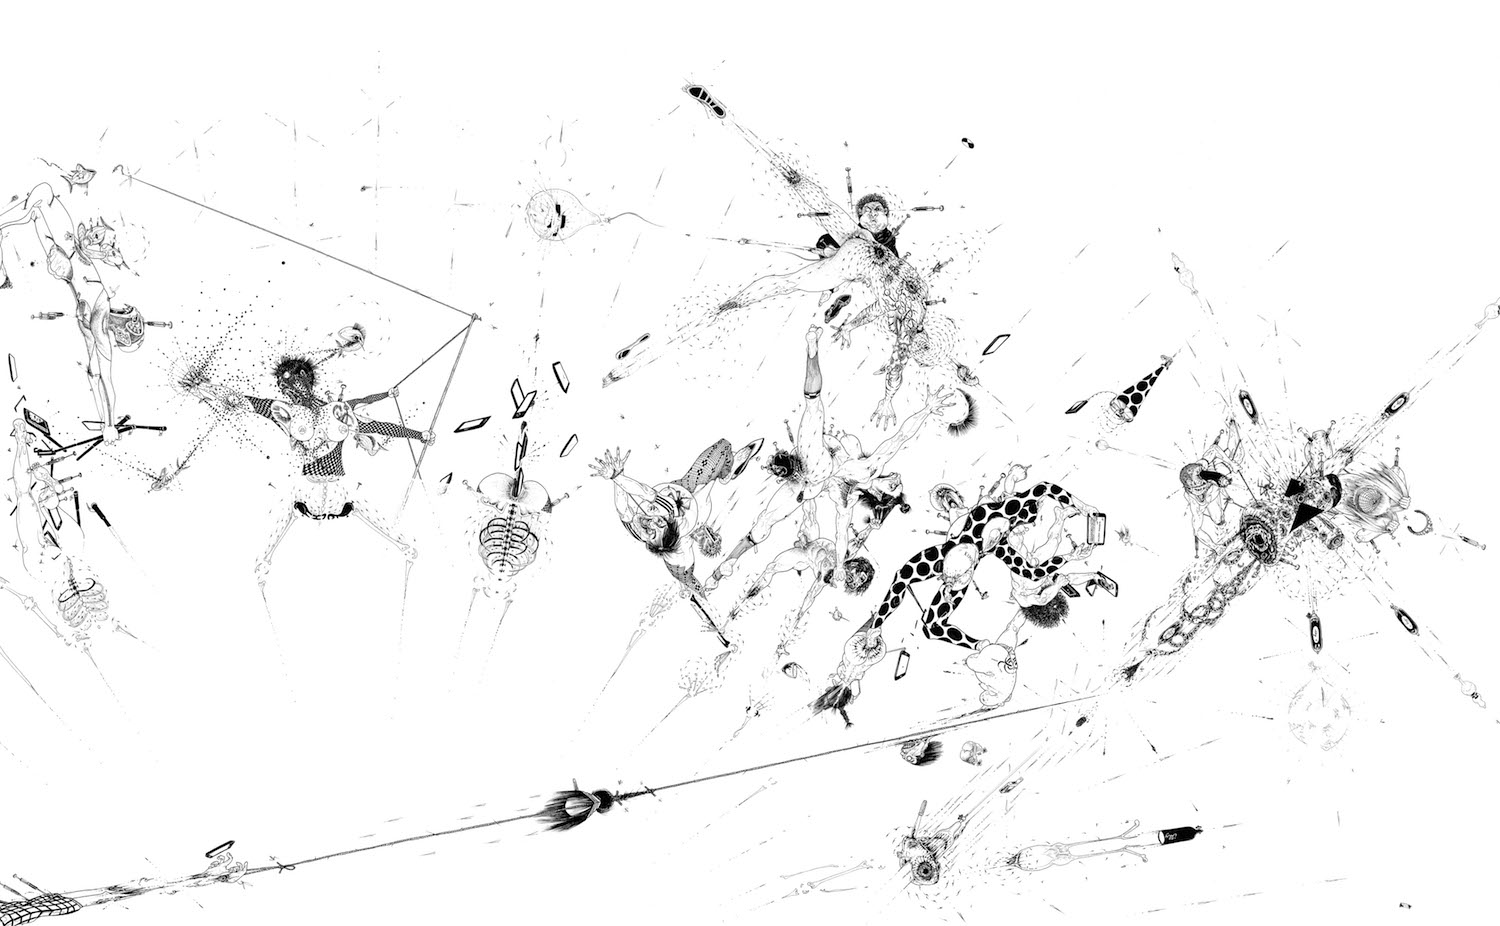  Ralf Ziervogel, Nach 20 Uhr noch weggehen, 2017 (Detail), Ink on paper, 140 cm x 276 cm, Courtesy Ralf Ziervogel, Foto: Werner Hettler © Ralf Ziervogel/VG Bild-Kunst Bonn 2018